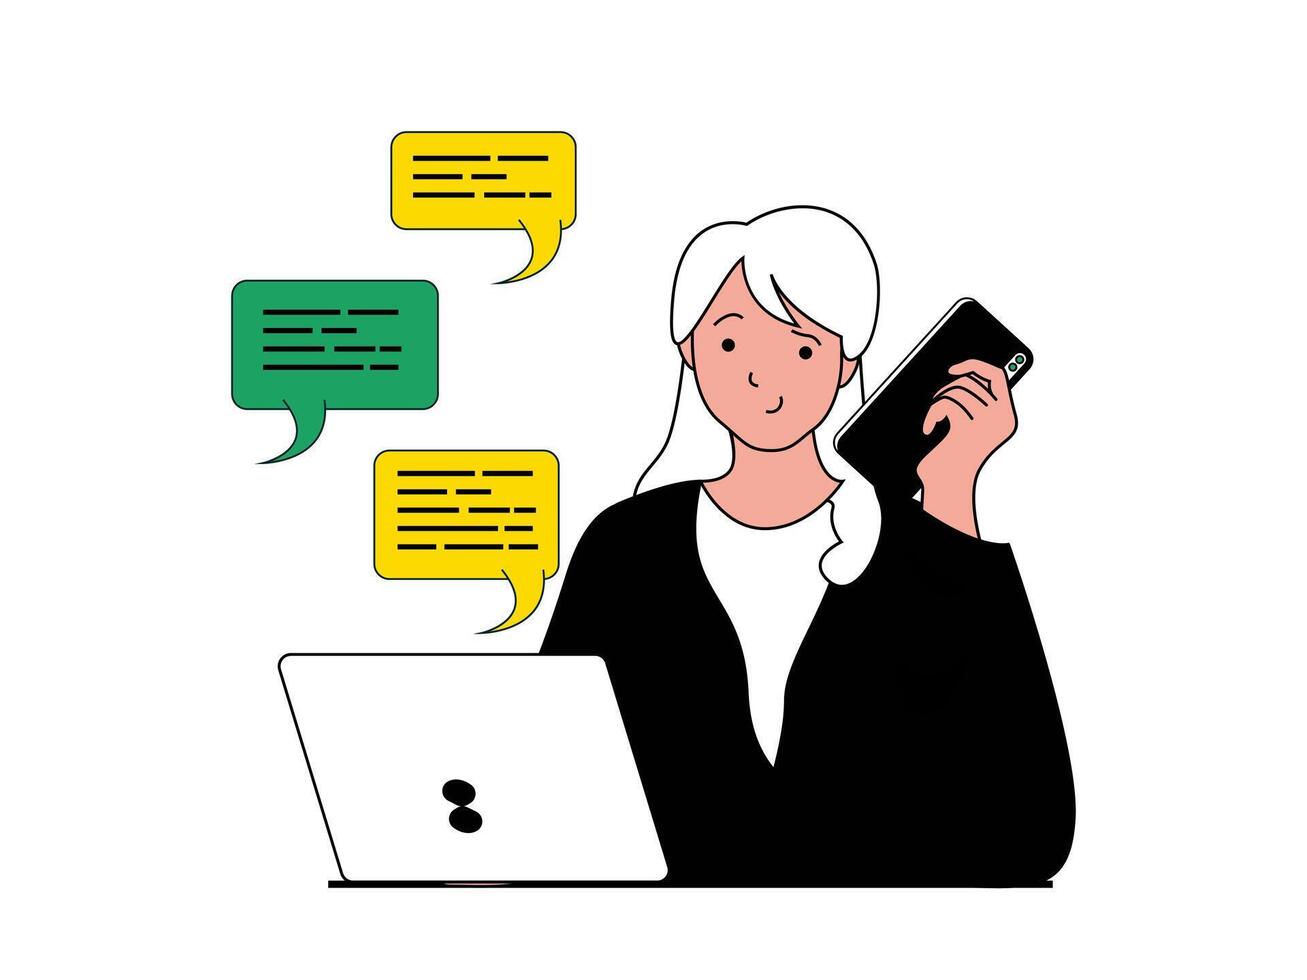 produktiviteit werkplaats concept met karakter situatie. vrouw chats online met medewerkers, oproepen Aan telefoon en controles werk processen. vector illustratie met mensen tafereel in vlak ontwerp voor web